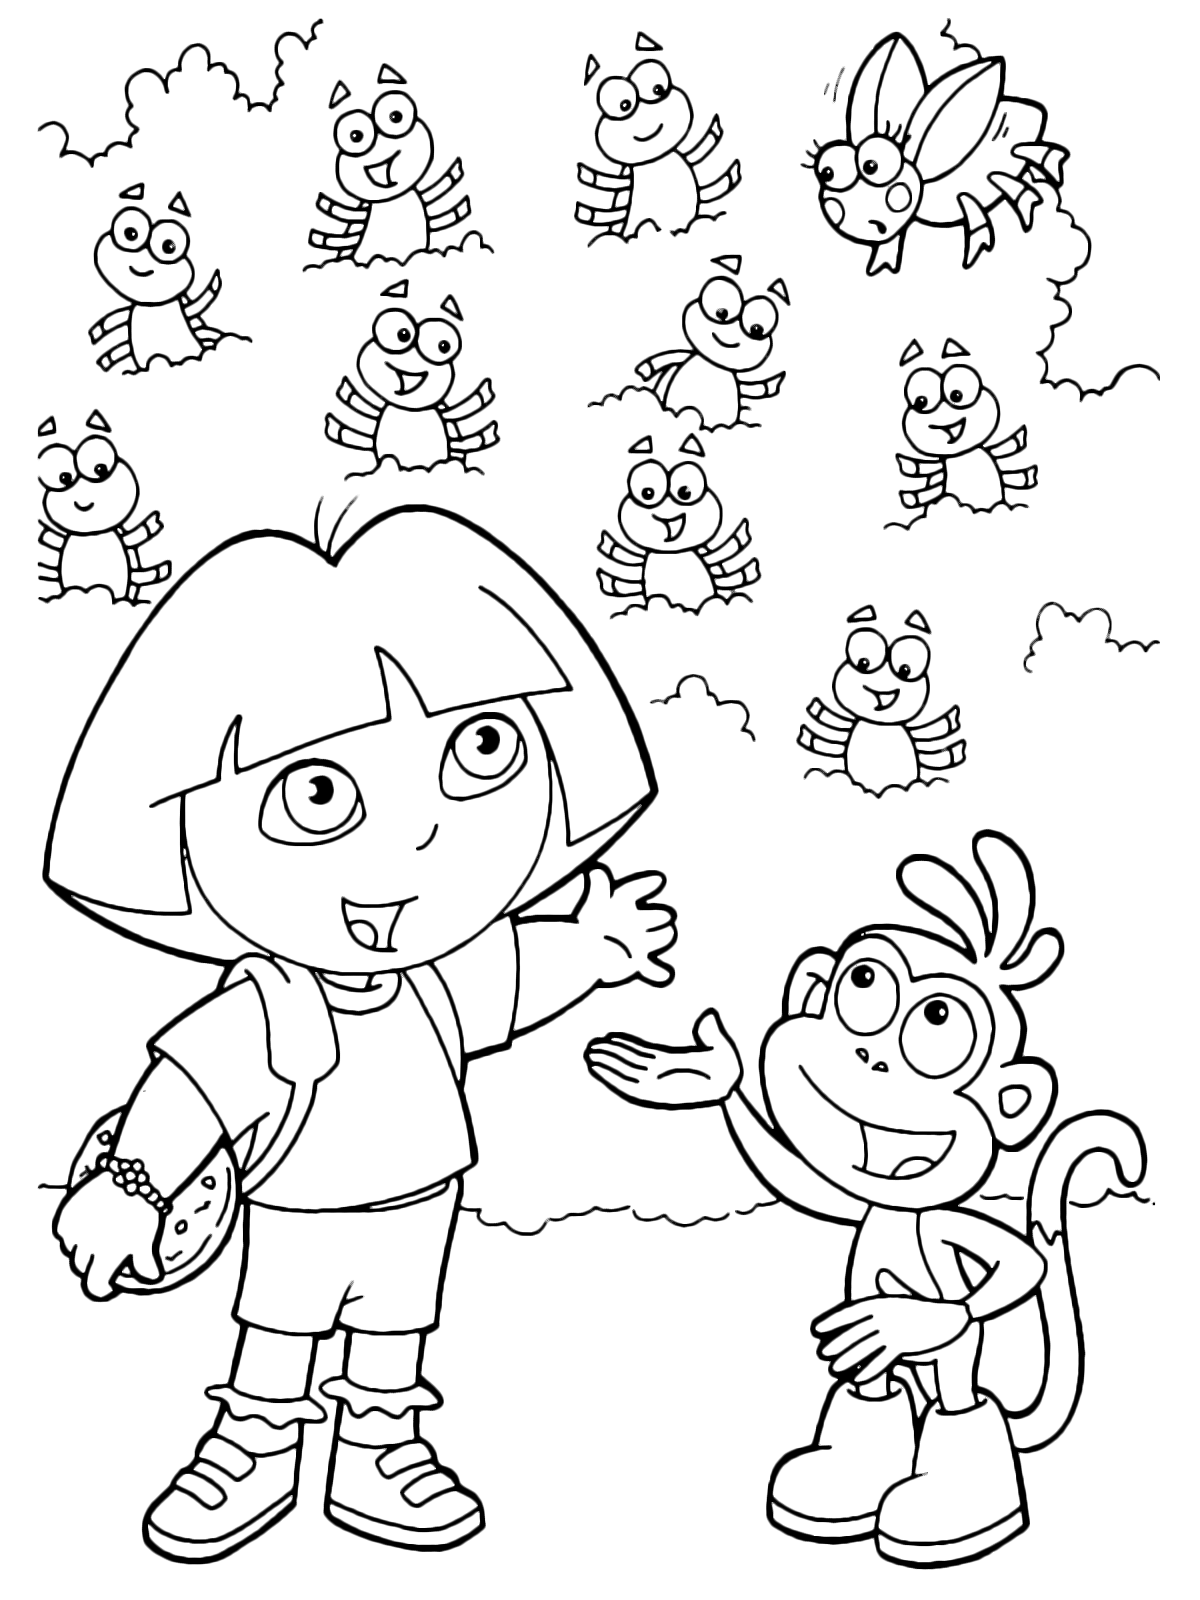 Dora l'esploratrice - Dora e Boots hanno trovato i coleotteri nascosti nel cespuglio